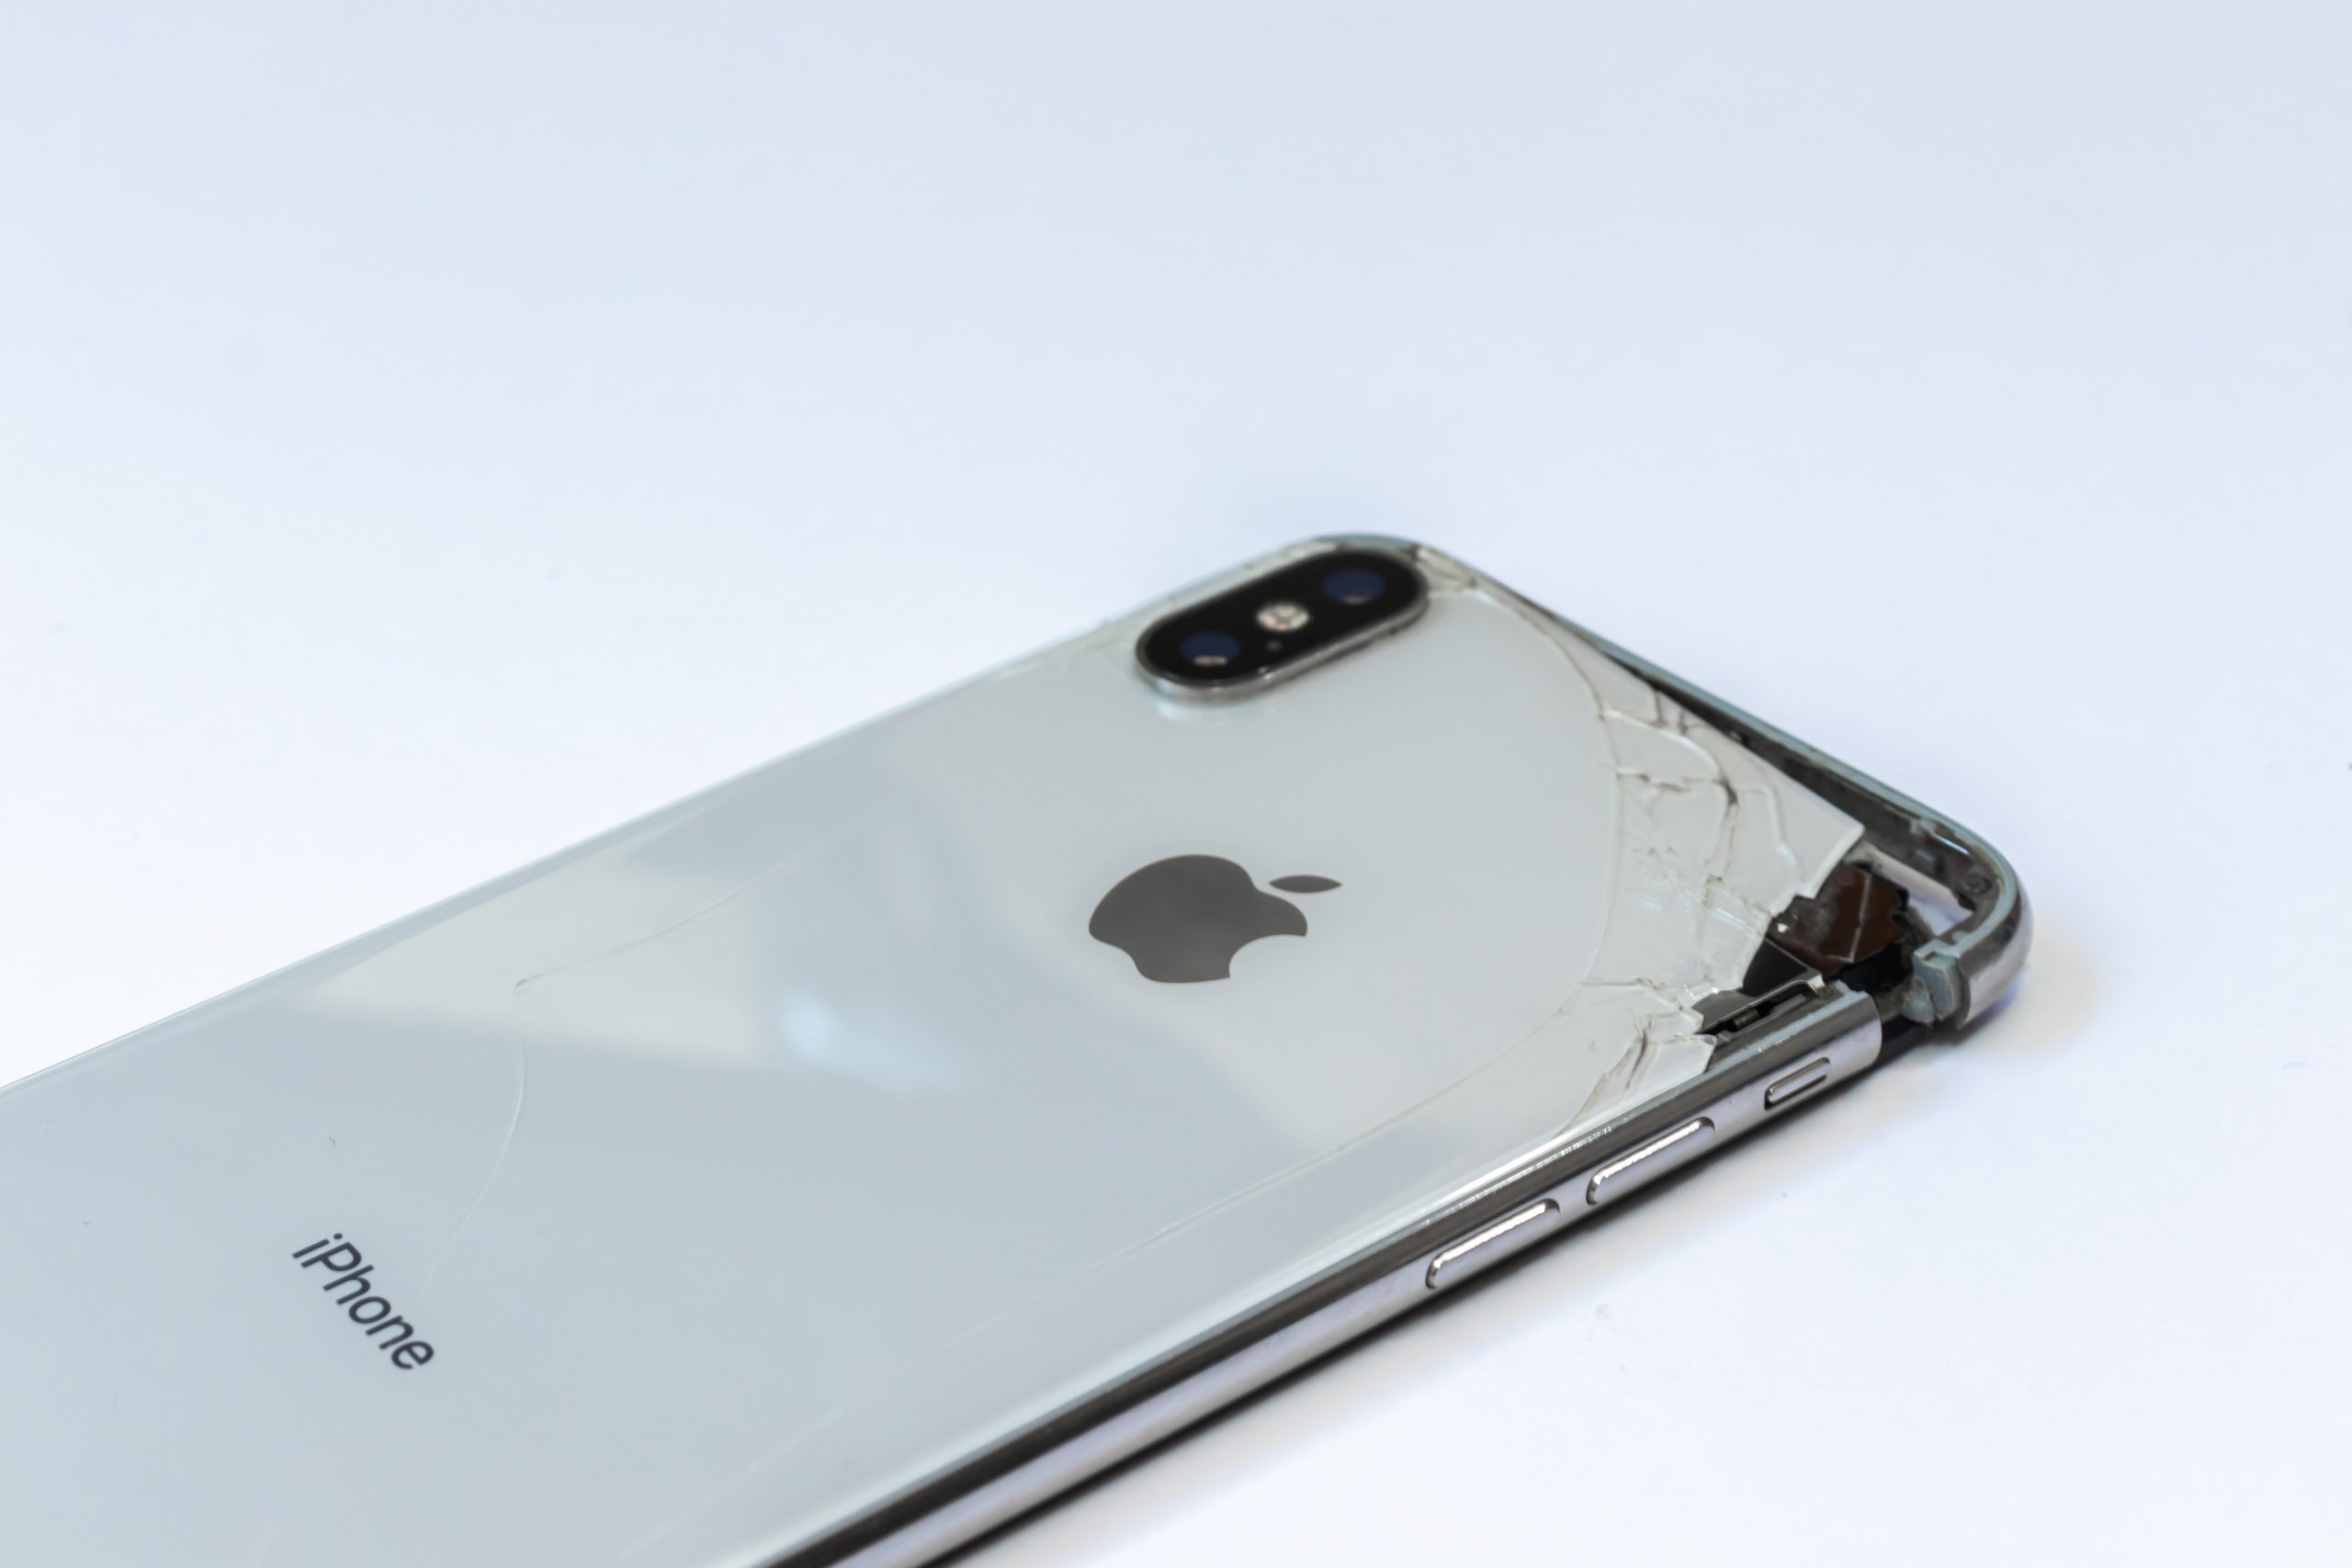 Are iPhones Repairable?